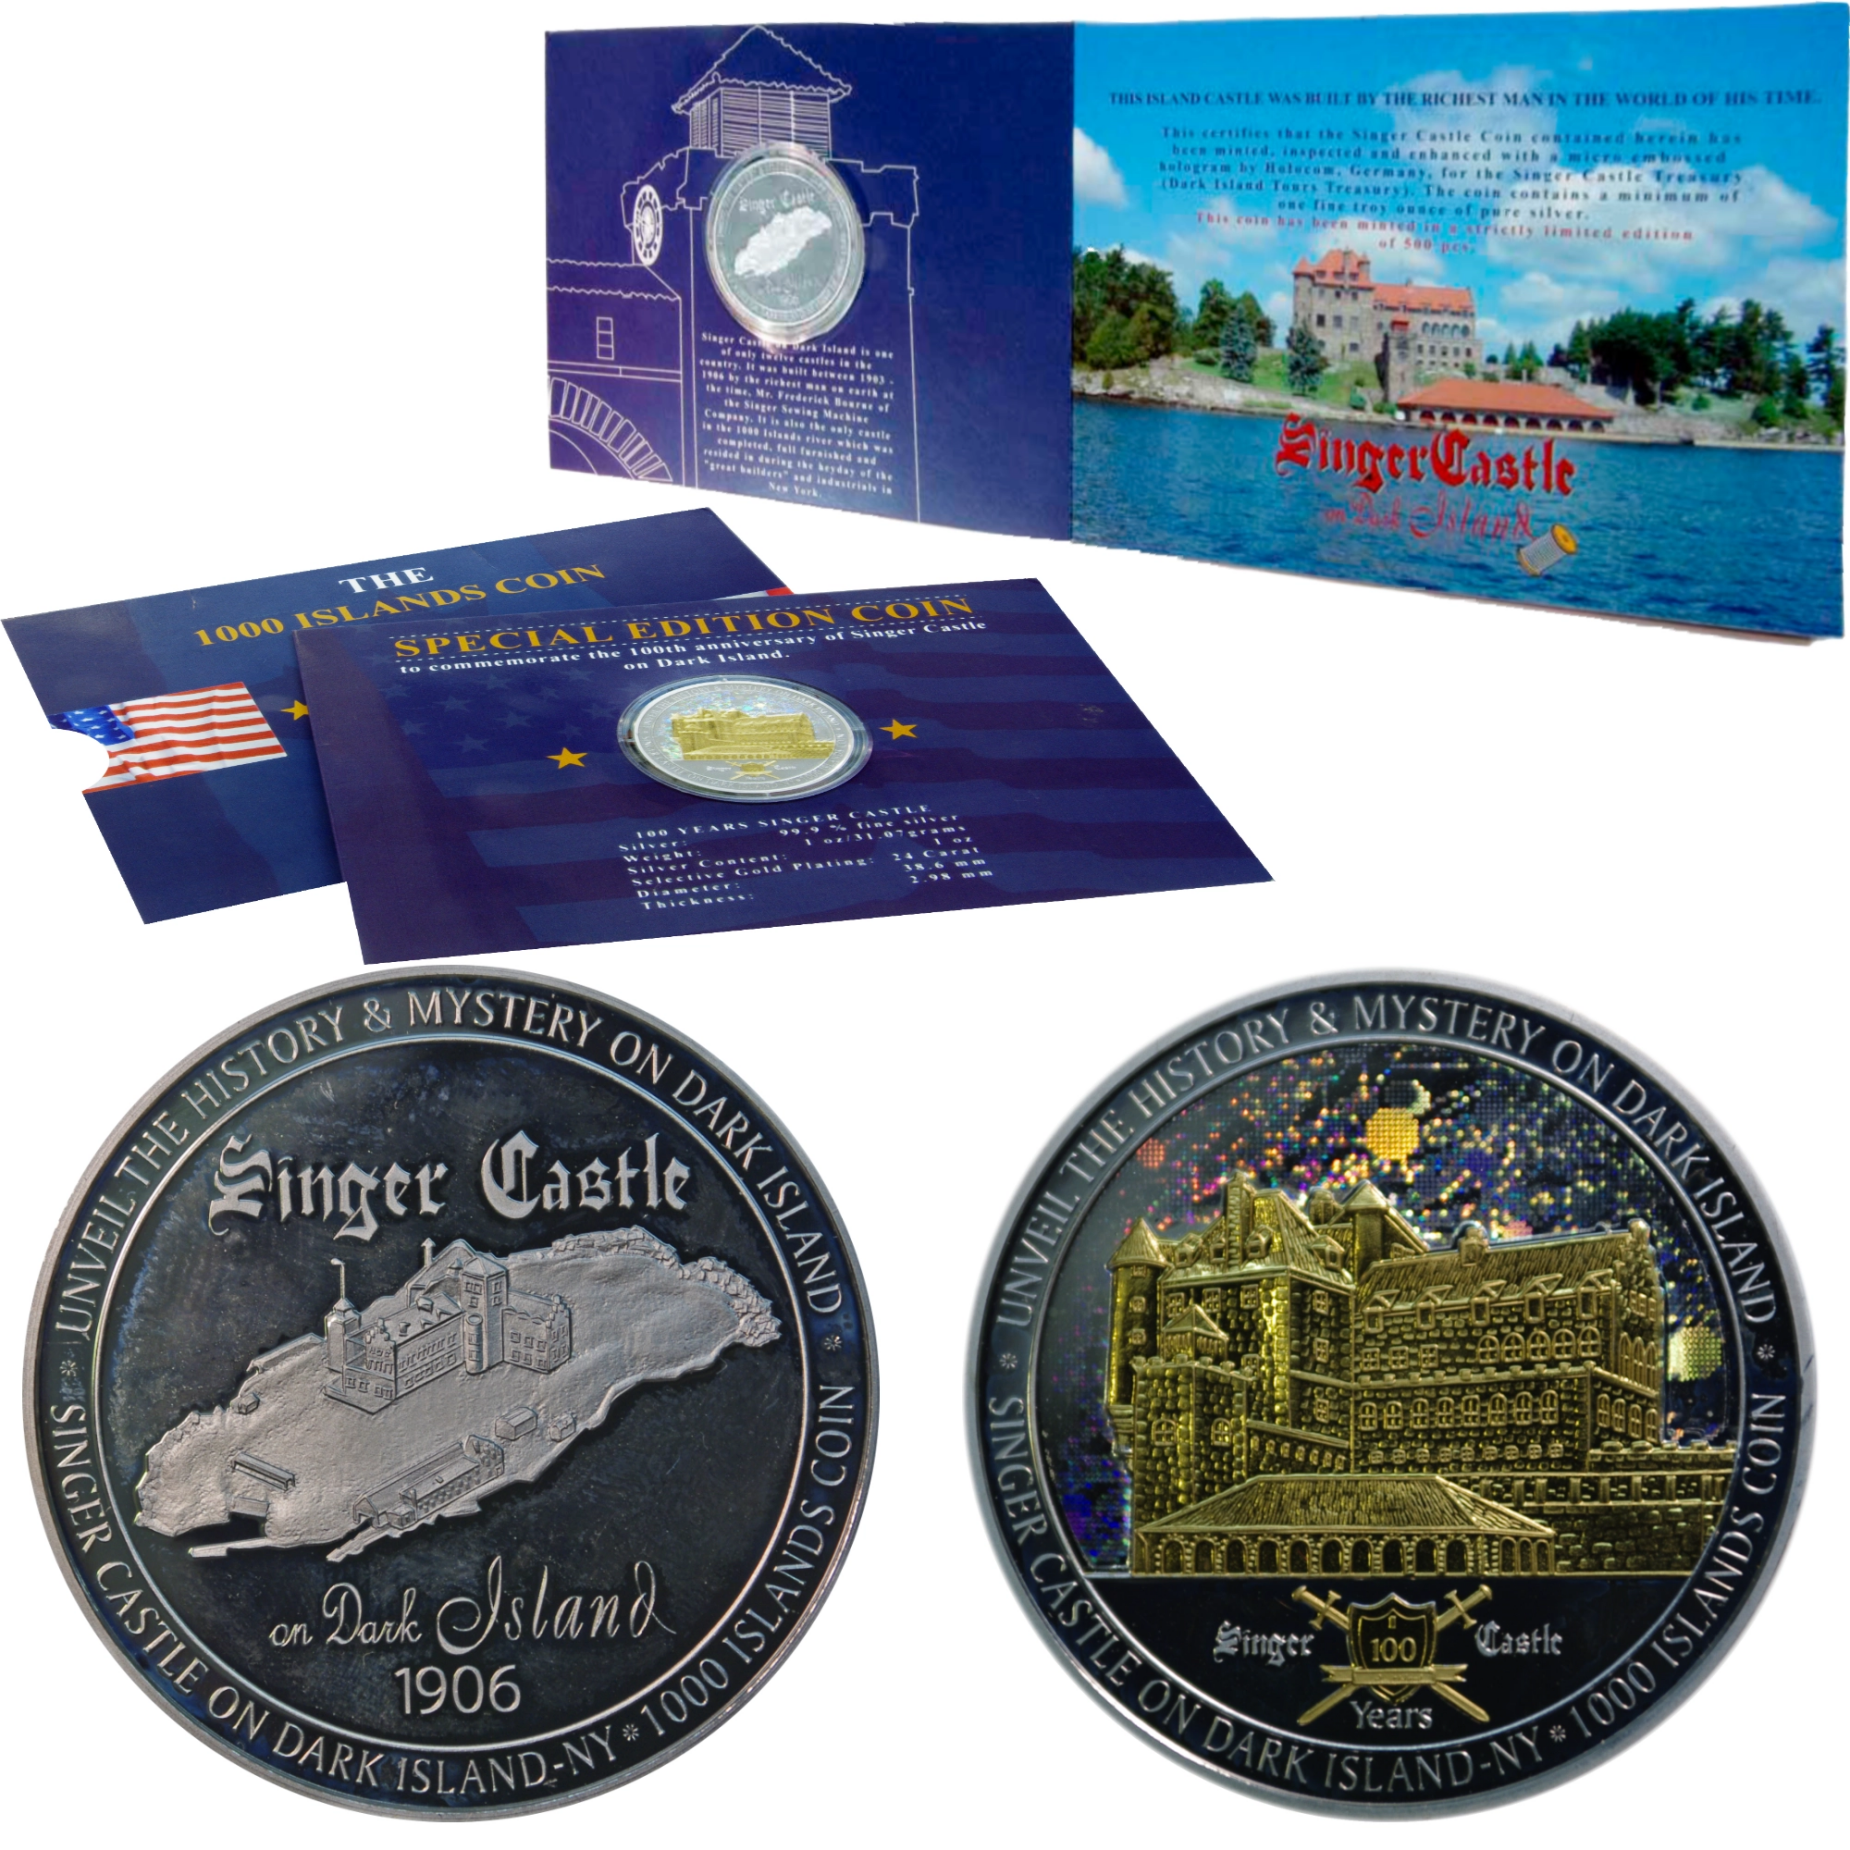 Zilveren munt met hologram voor het eeuwfeest van Singer Castle op Dark Island met Schober